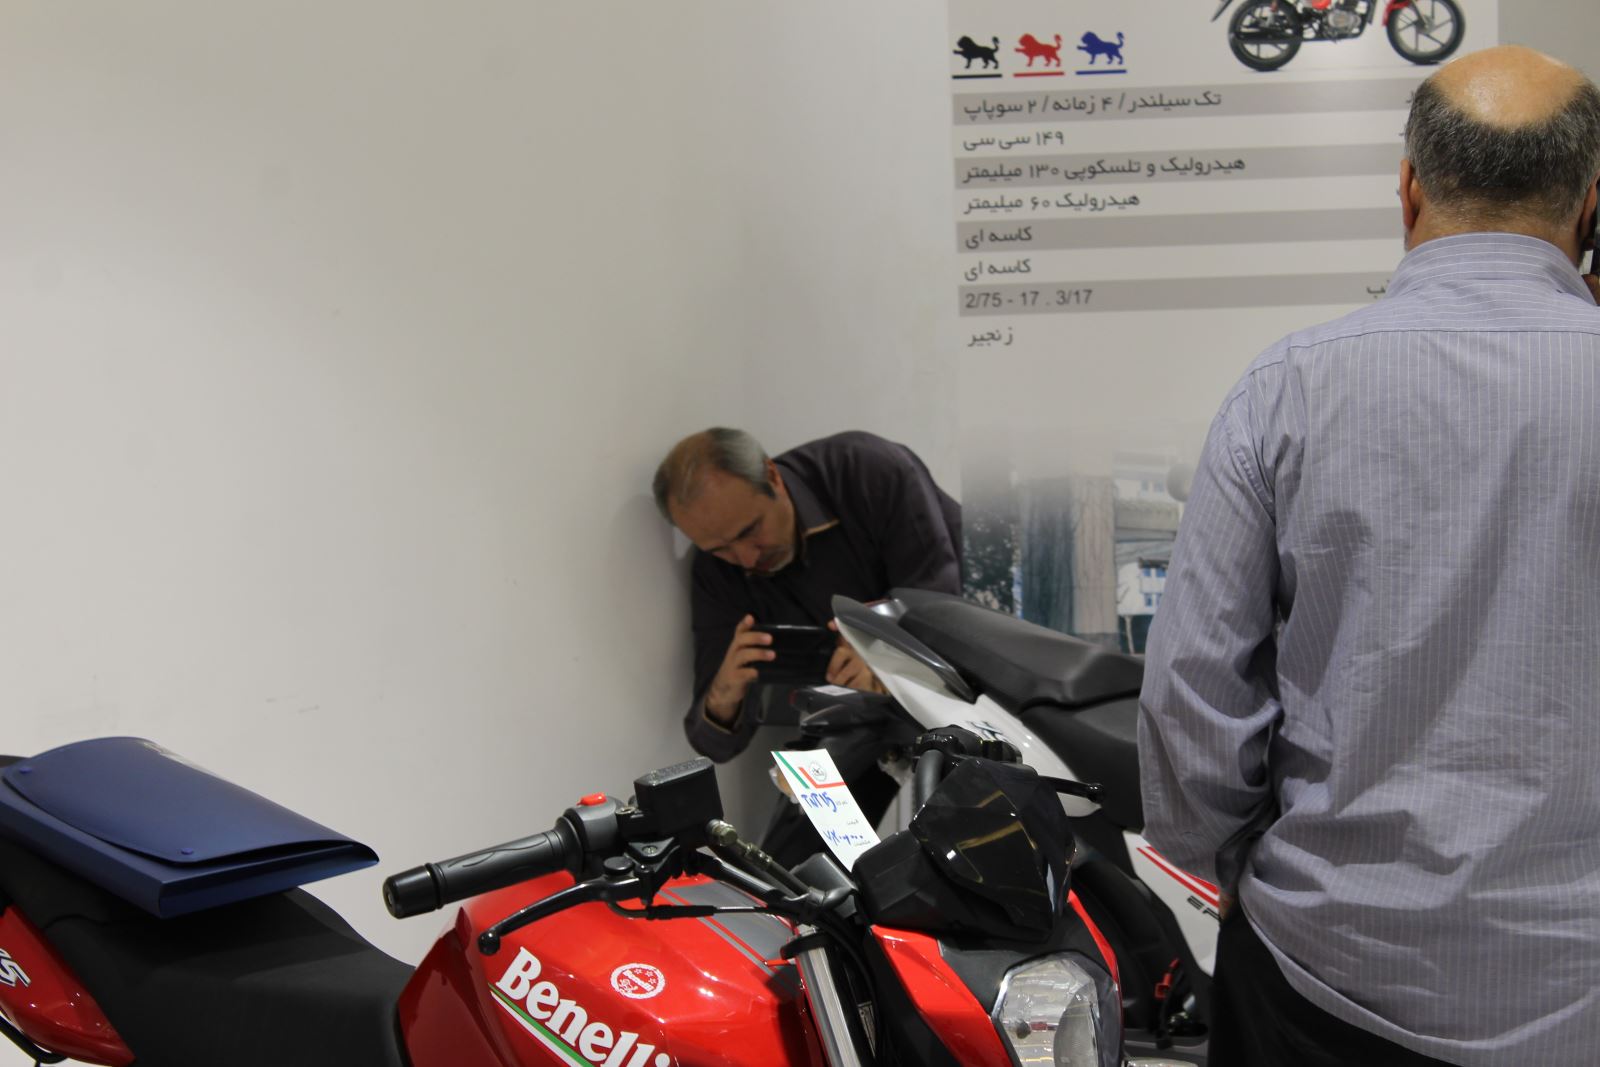 تصویری از یک موتورسیکلت بنللی قرمز رنگ در نمایشگاه موتورسیکلت در حالی که مردی در کنار آن خم شده تا از آن عکس بگیرد.